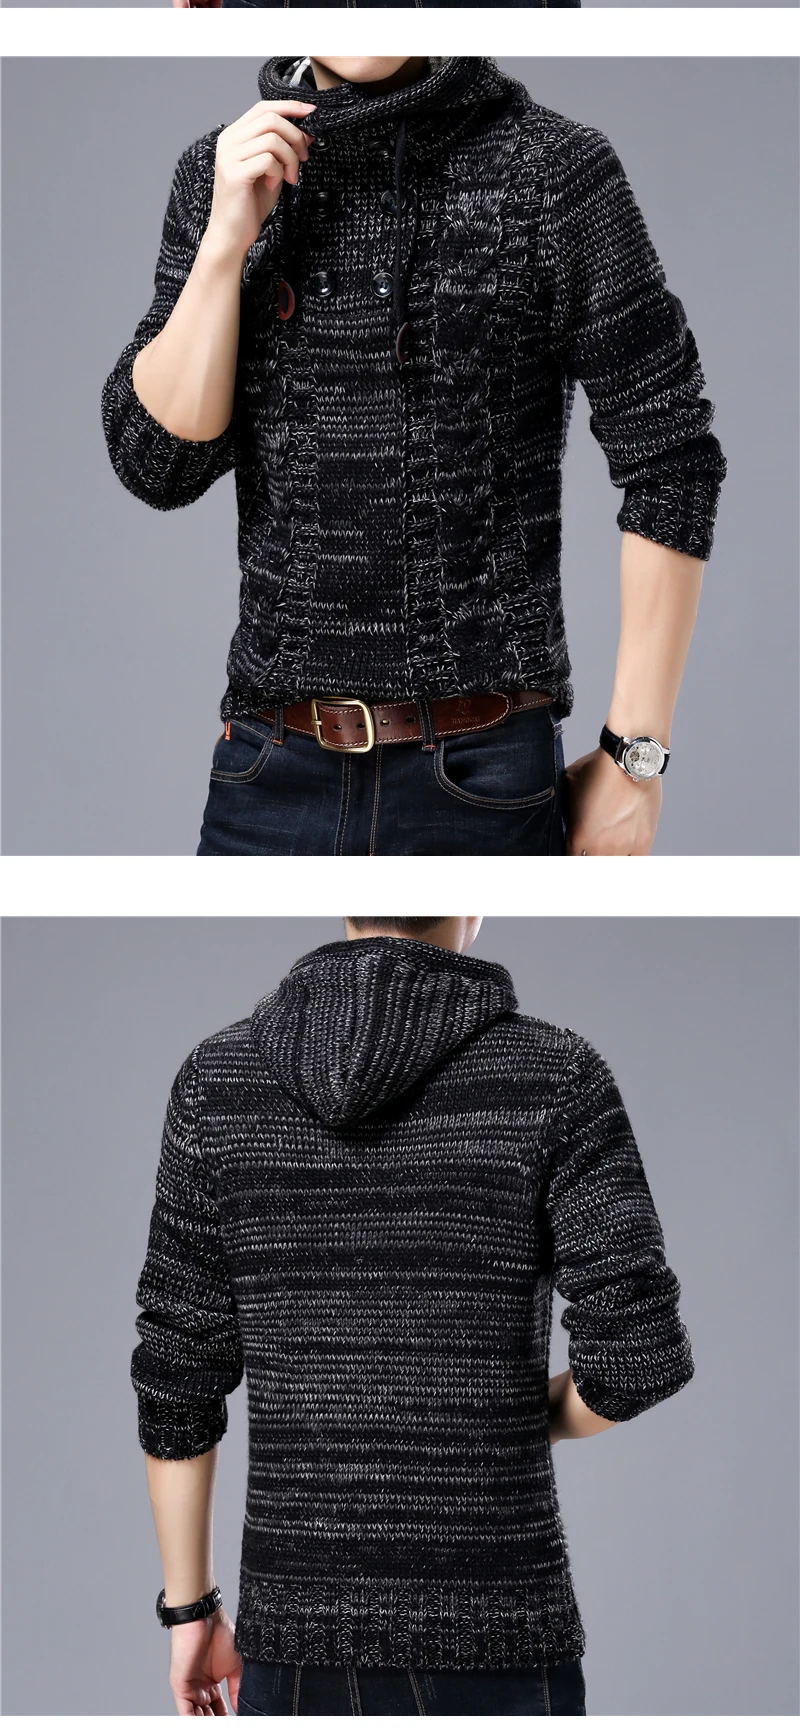 QUANBO мужской свитер брендовая одежда новый зимний thinck теплый вязаный свитер кардиган мужской моды с капюшоном 35% шерсть свитер пальто S-4XL